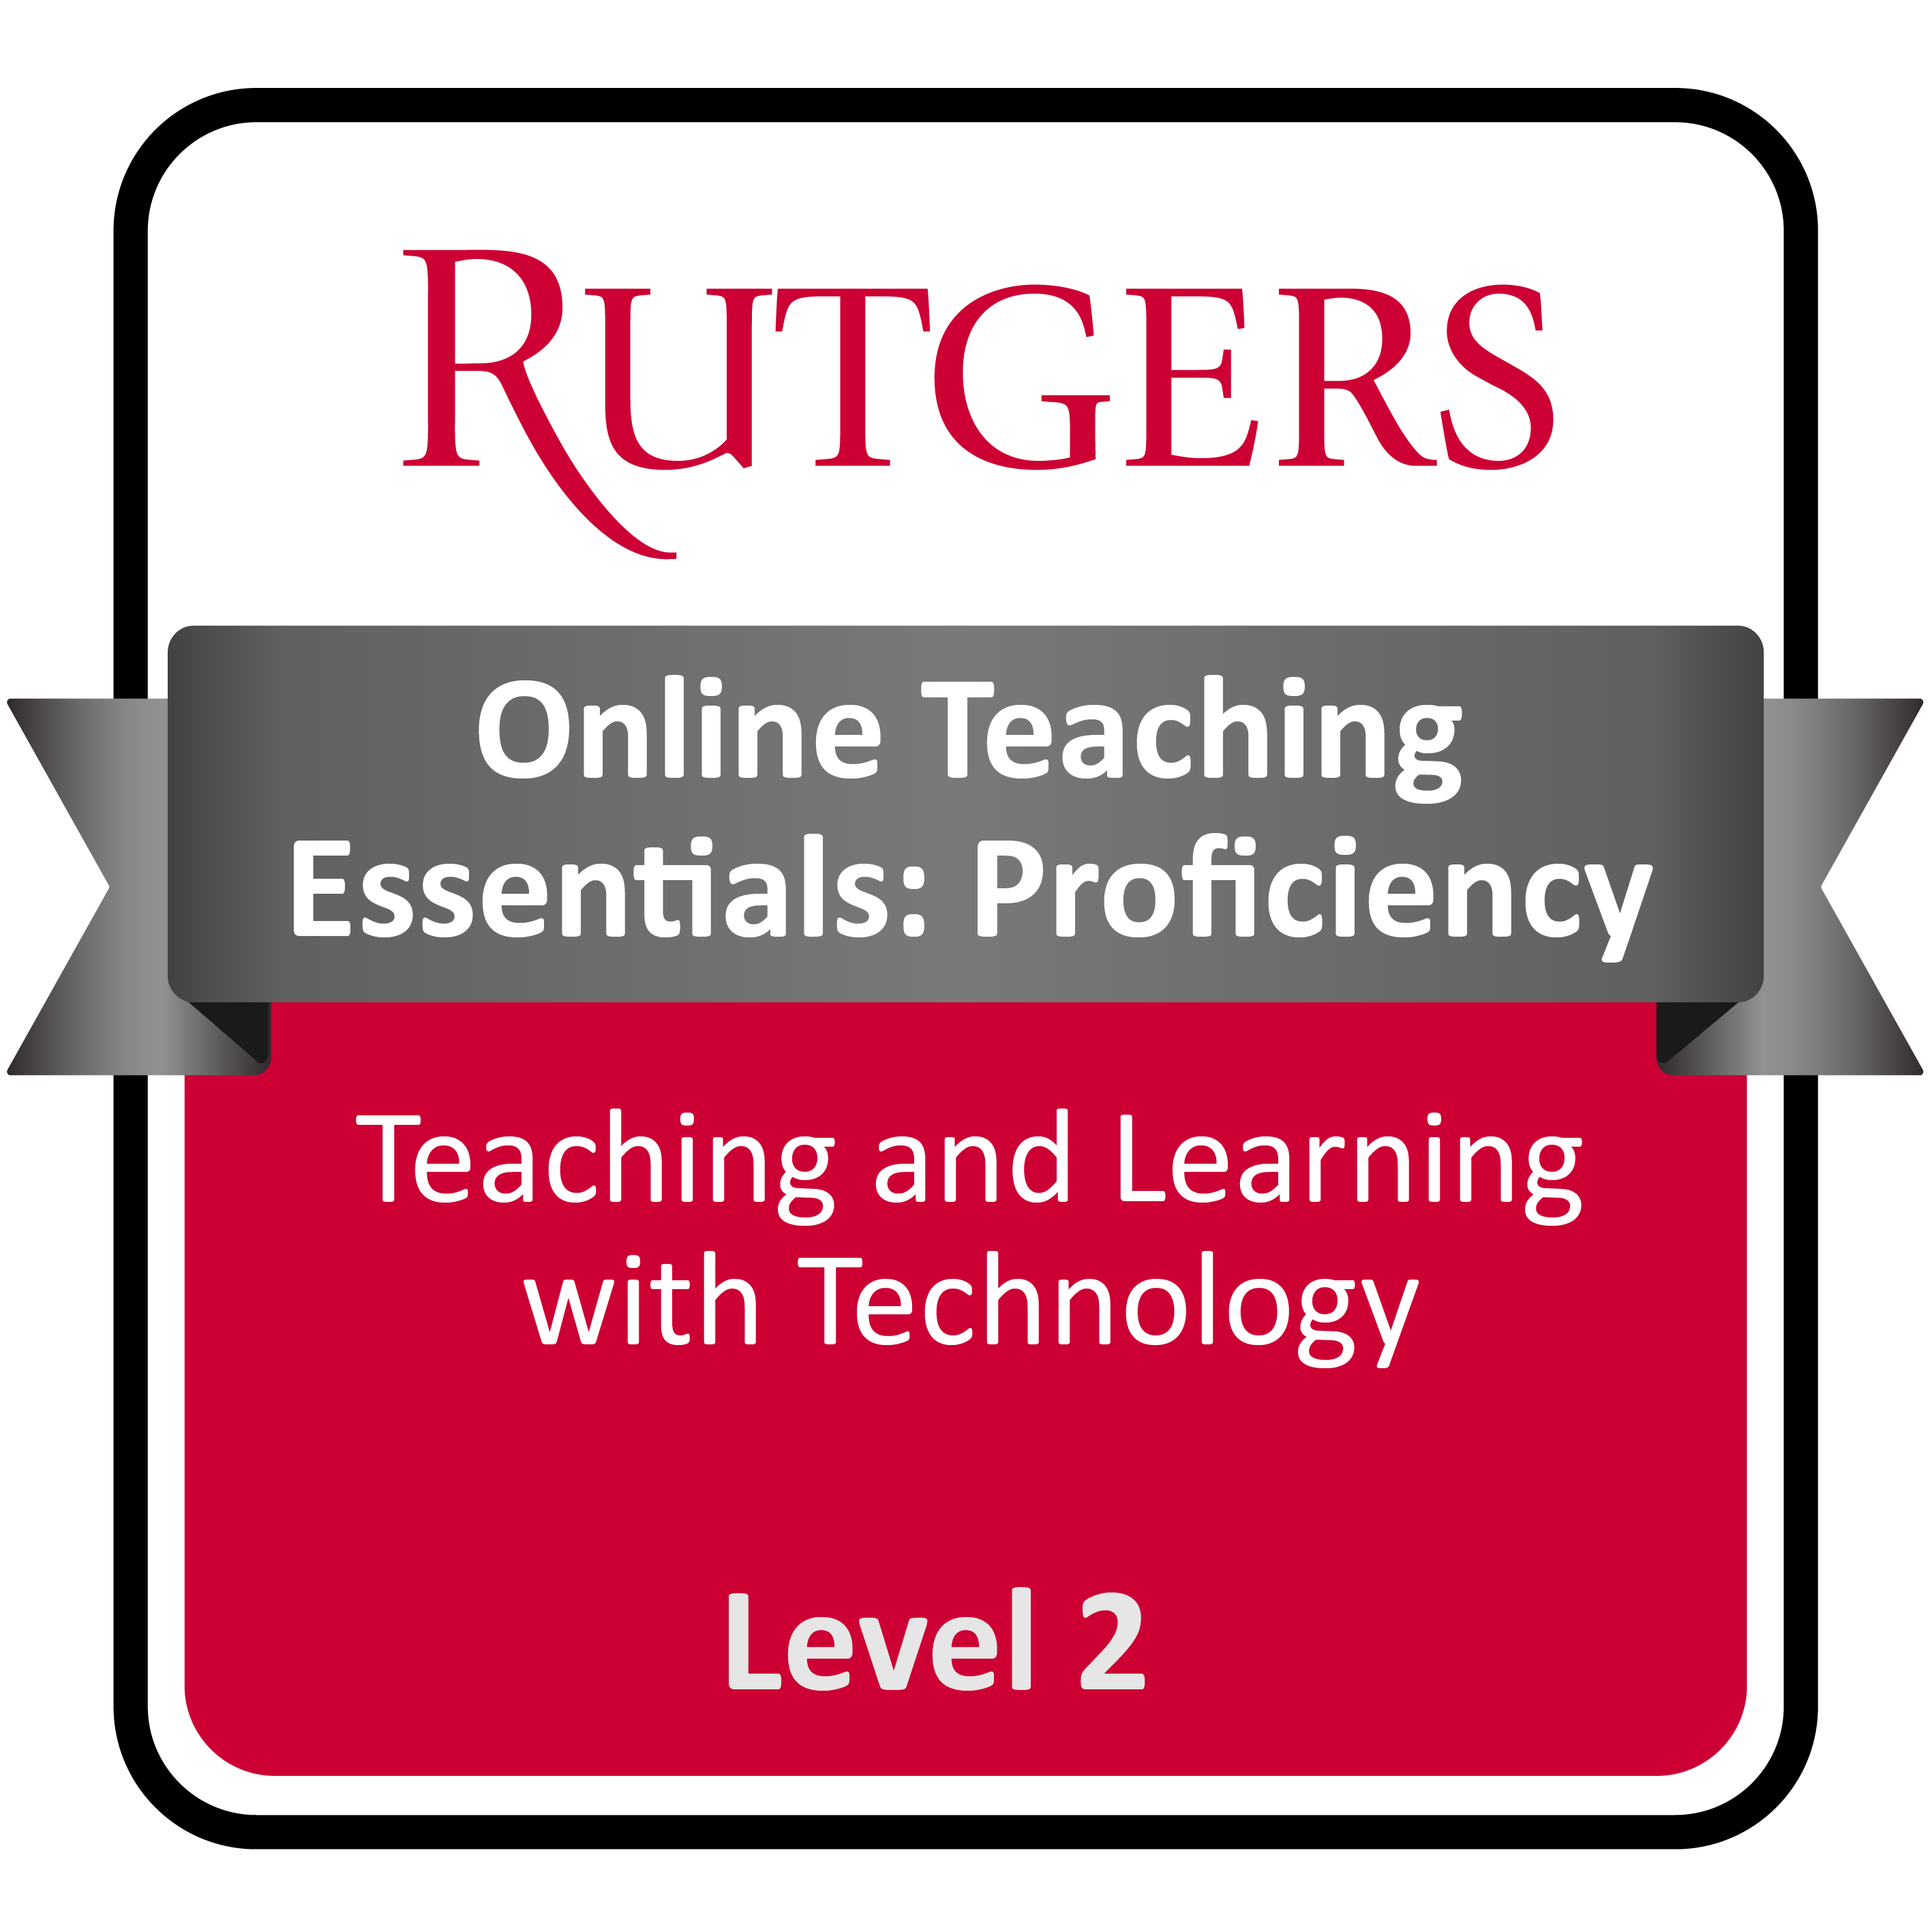 Level 2: Online Teaching Proficiency Digital Badge